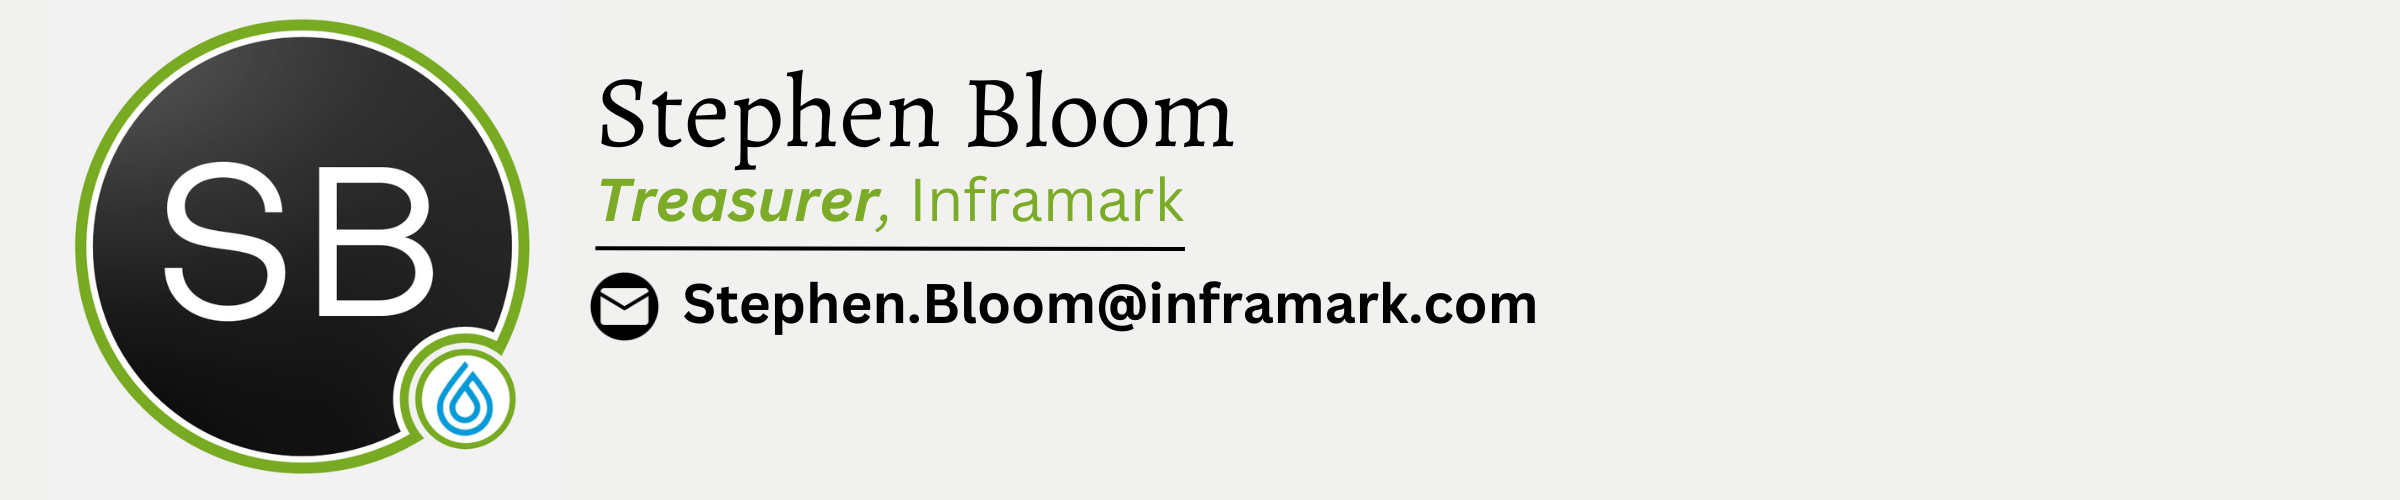 Stephen Bloom. Treasurer, Inframark. Email is Stephen.Bloom@inframark.com.